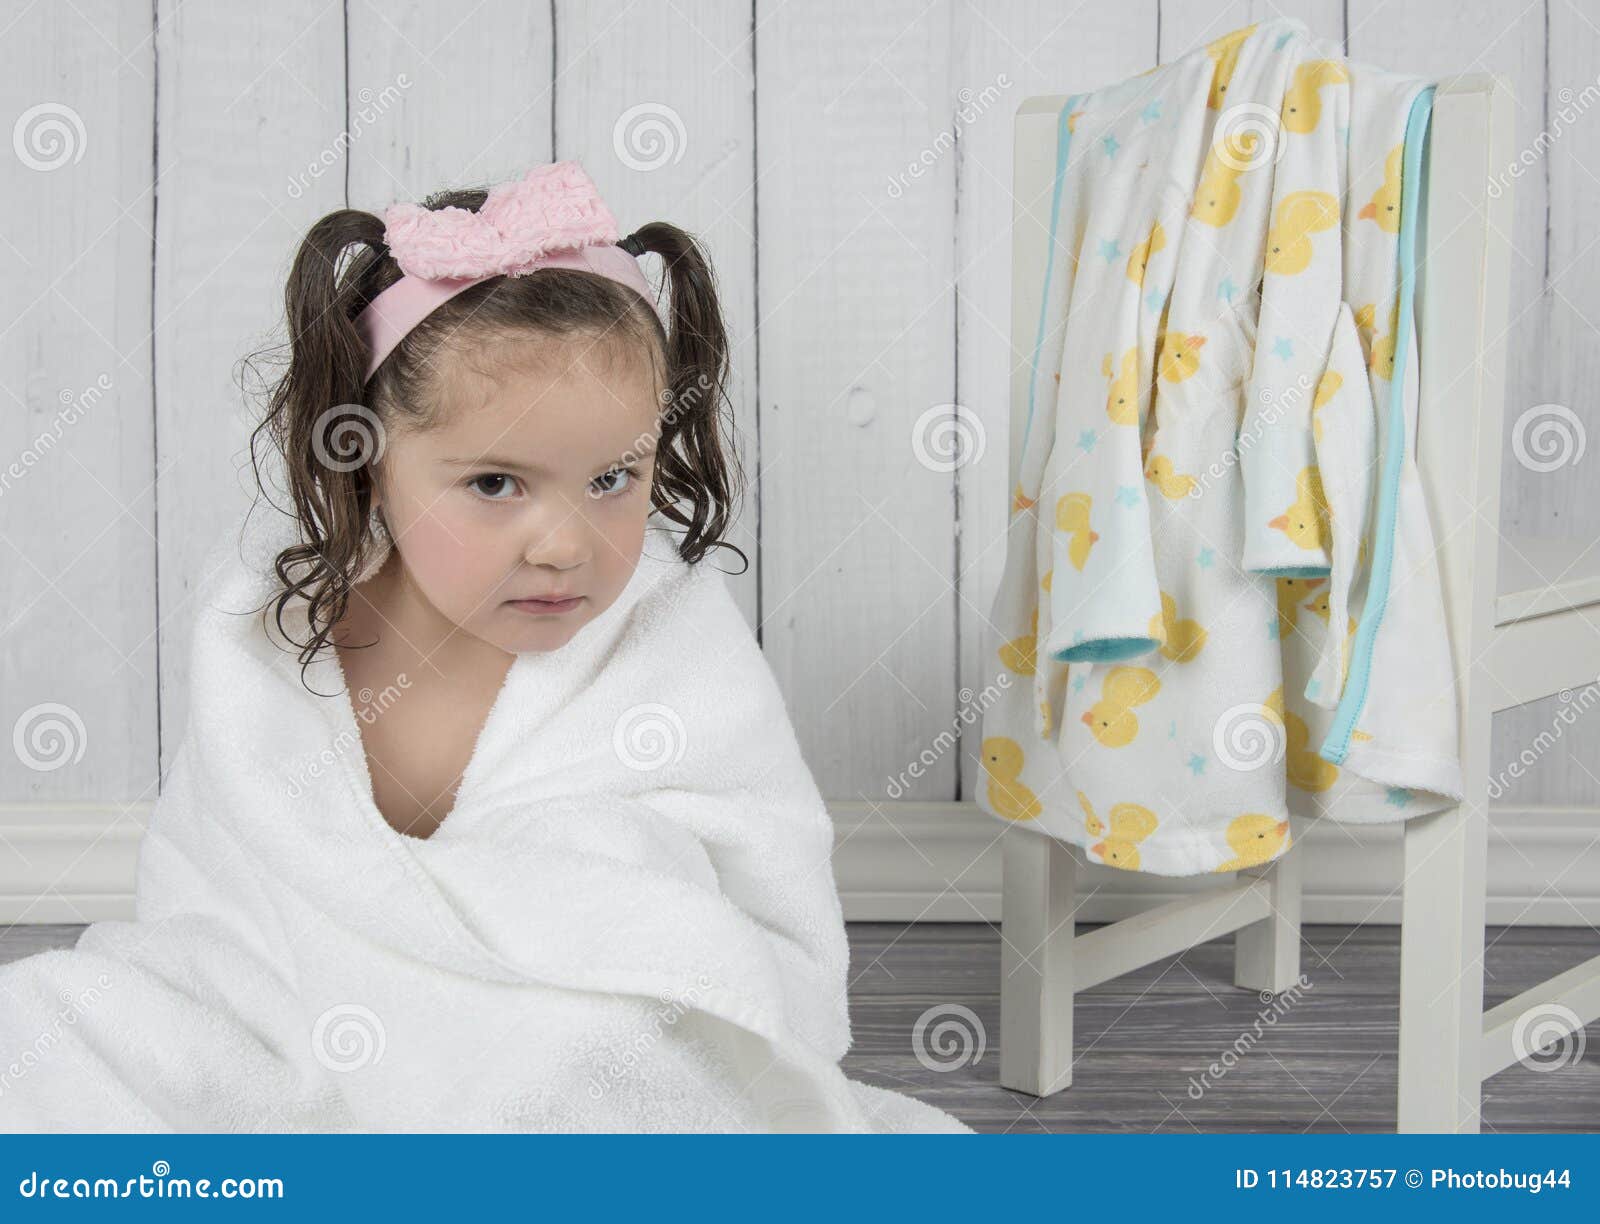 Сестра после ванной. Девочка в полотенце после ванны. Маленькая девочка после ванны. Ребенок в полотенце после ванны. Полотенце после душа детей.